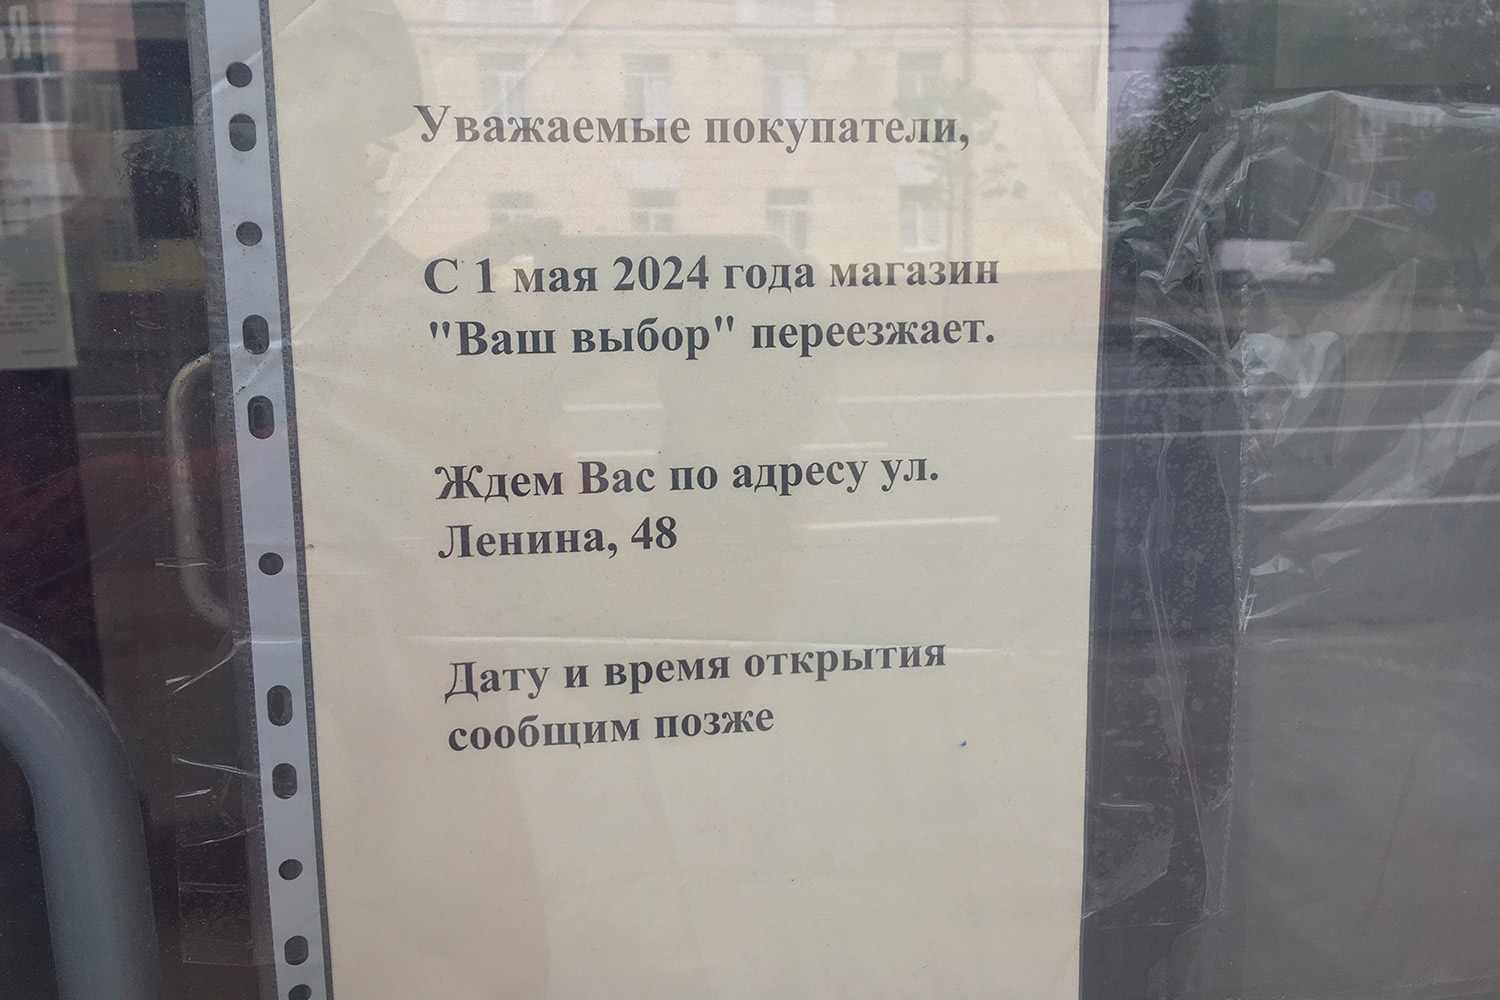 Магазин конфиската в Витебске закрыт с 1 мая